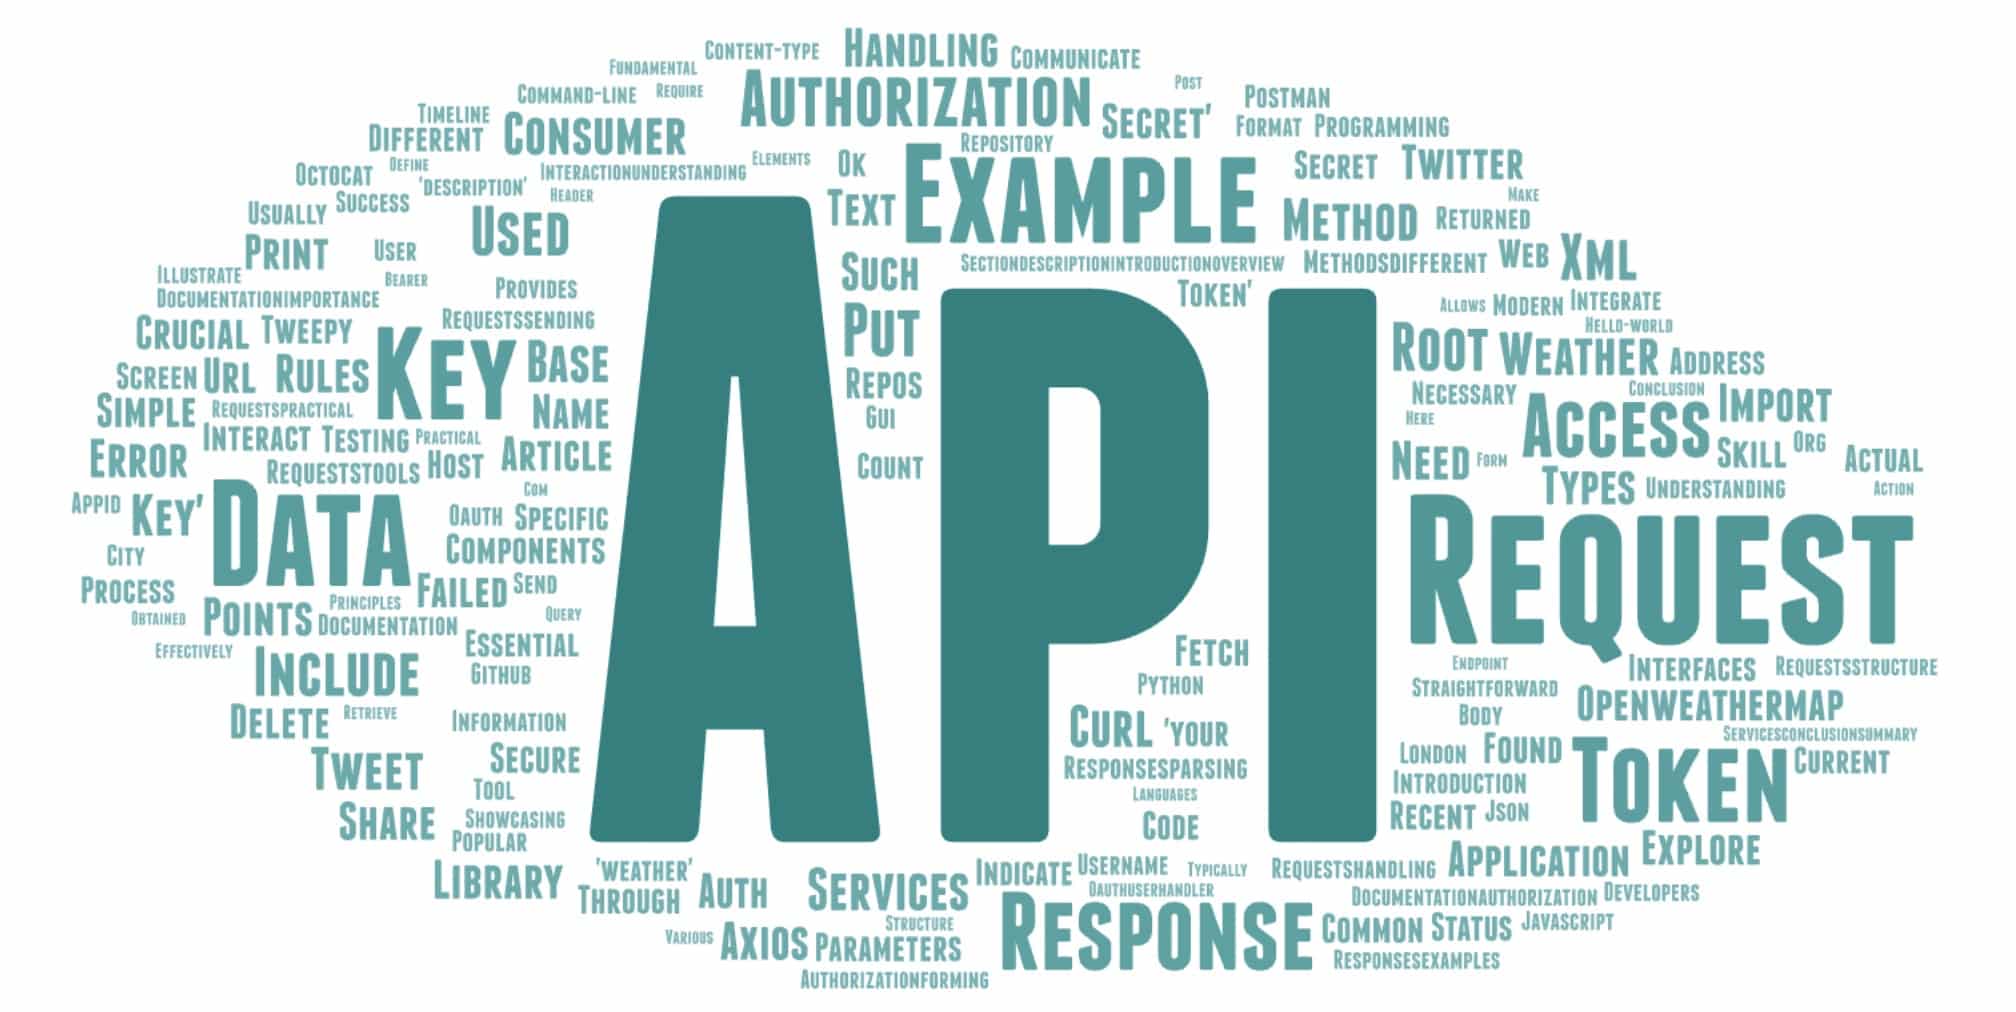 Hoe kunt u communiceren met webservices via de API?